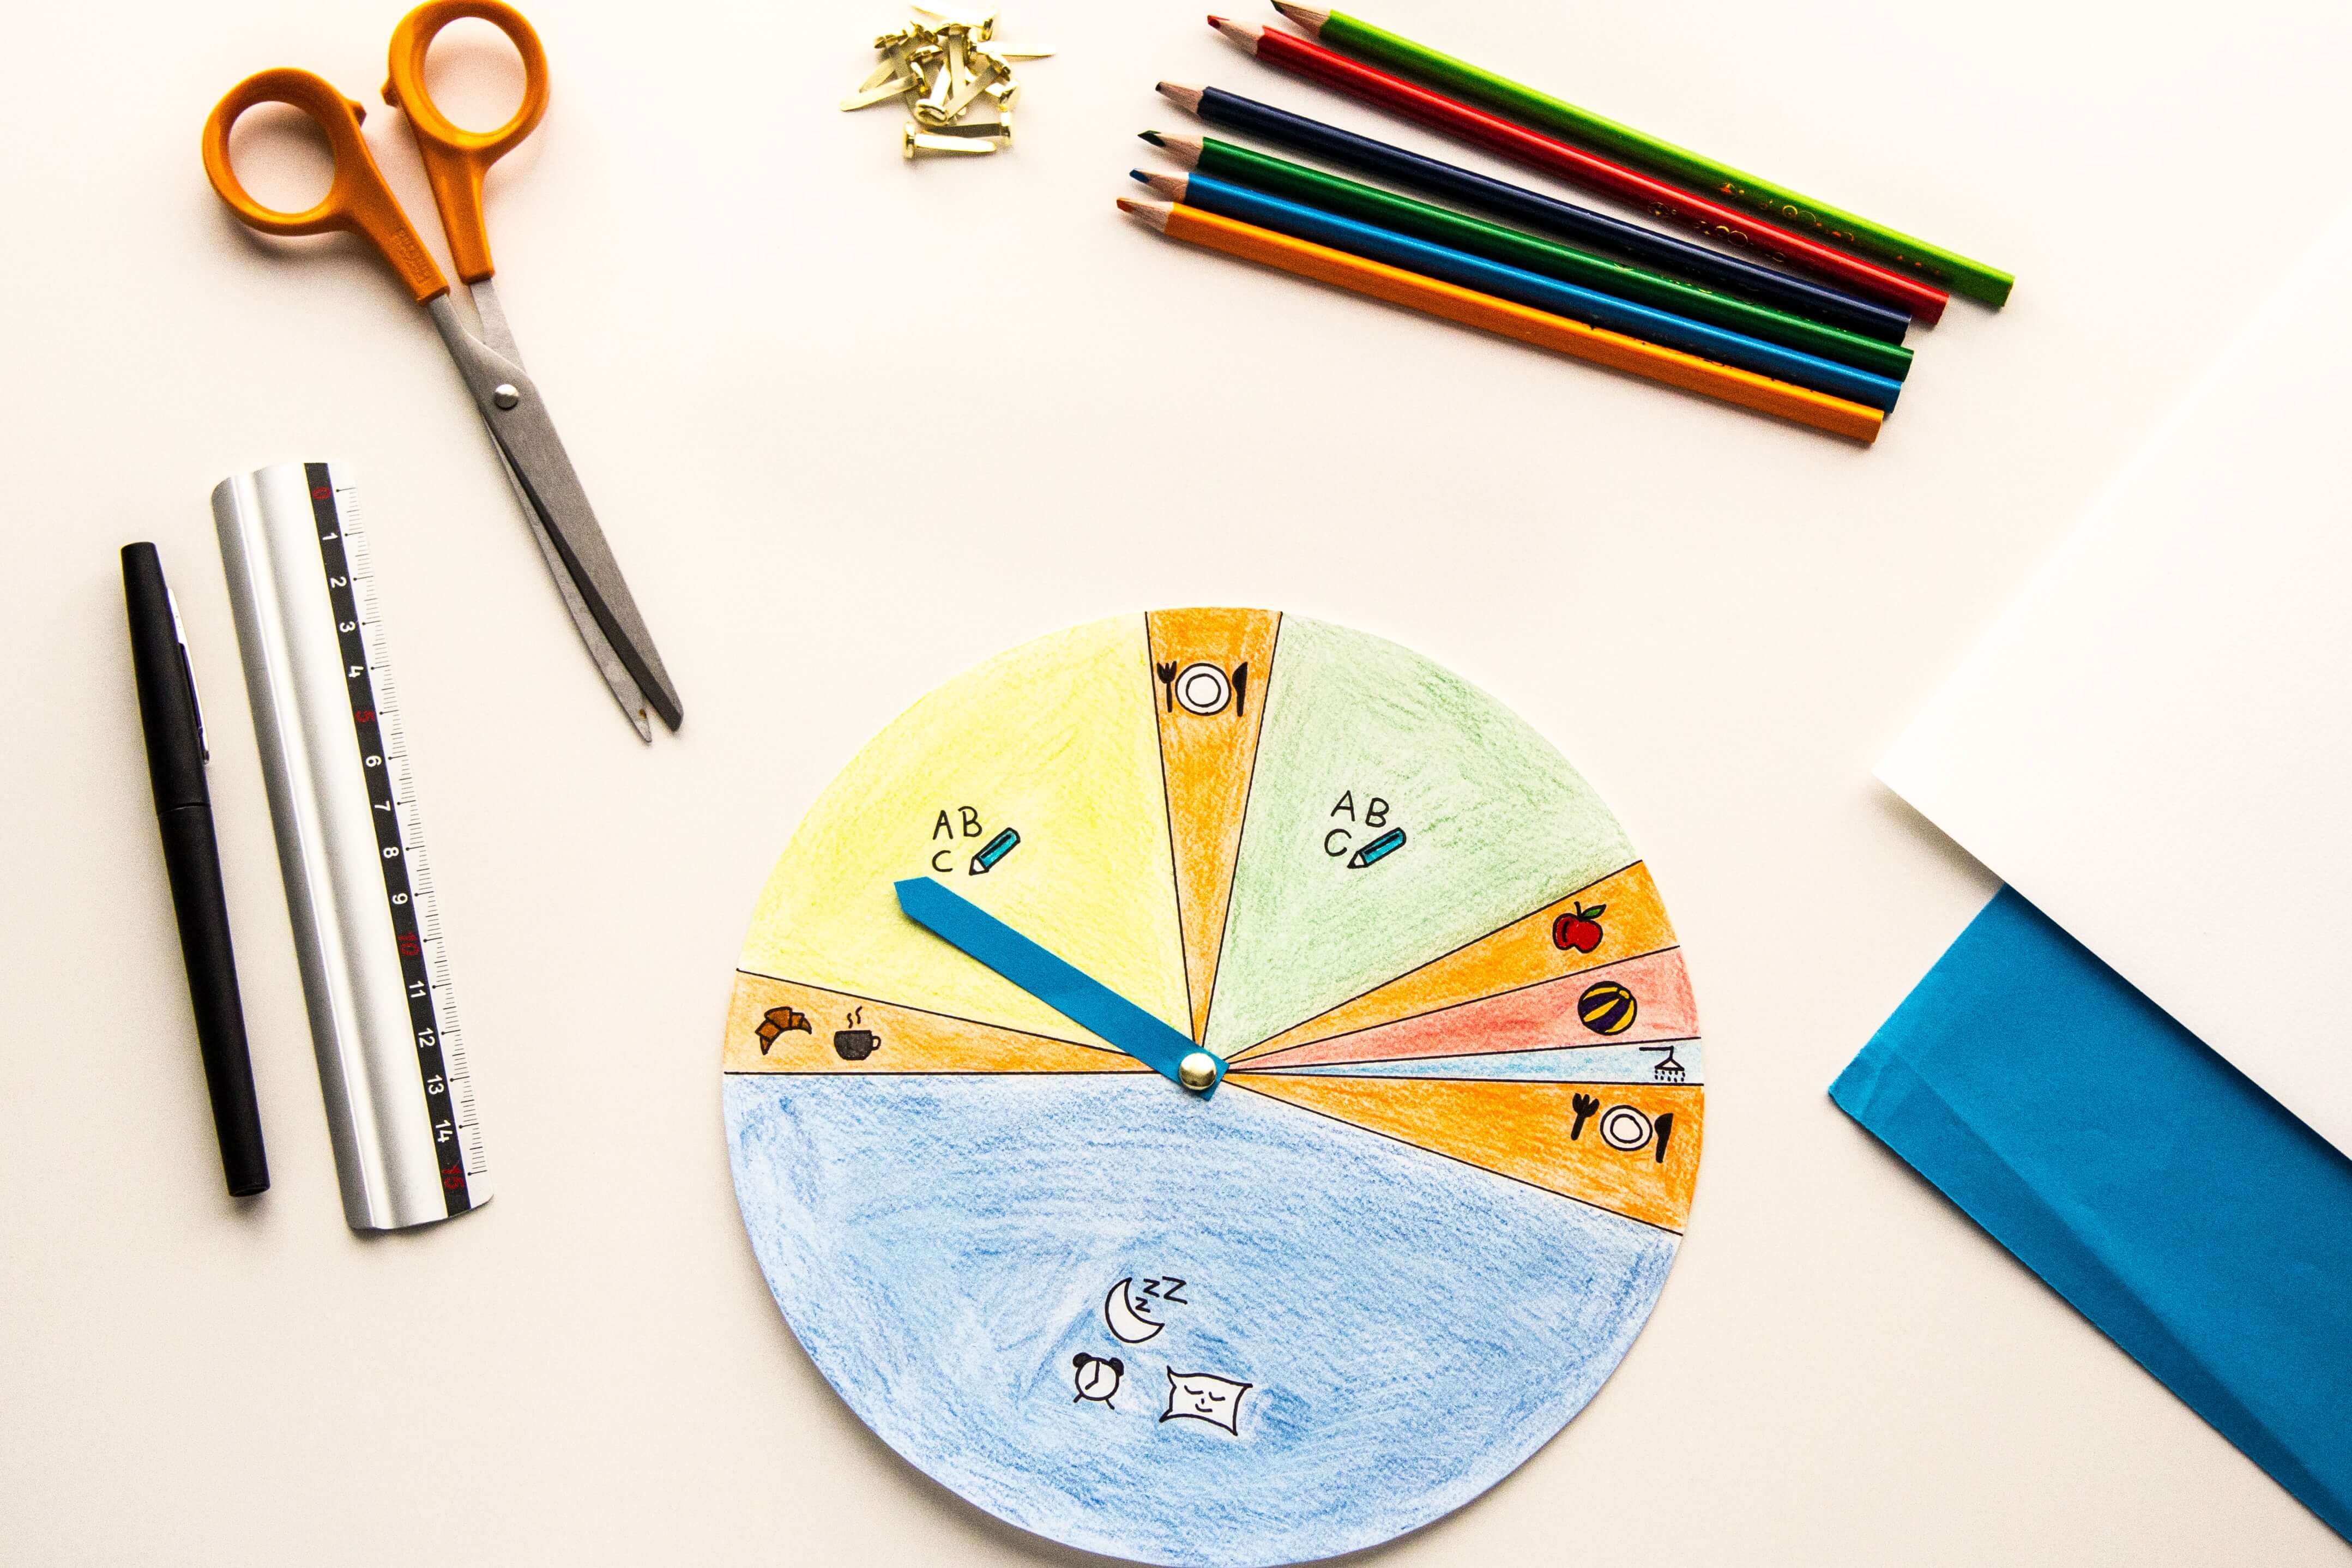 Como fazer um Relógio de papel- Como ensinar as horas para crianças 